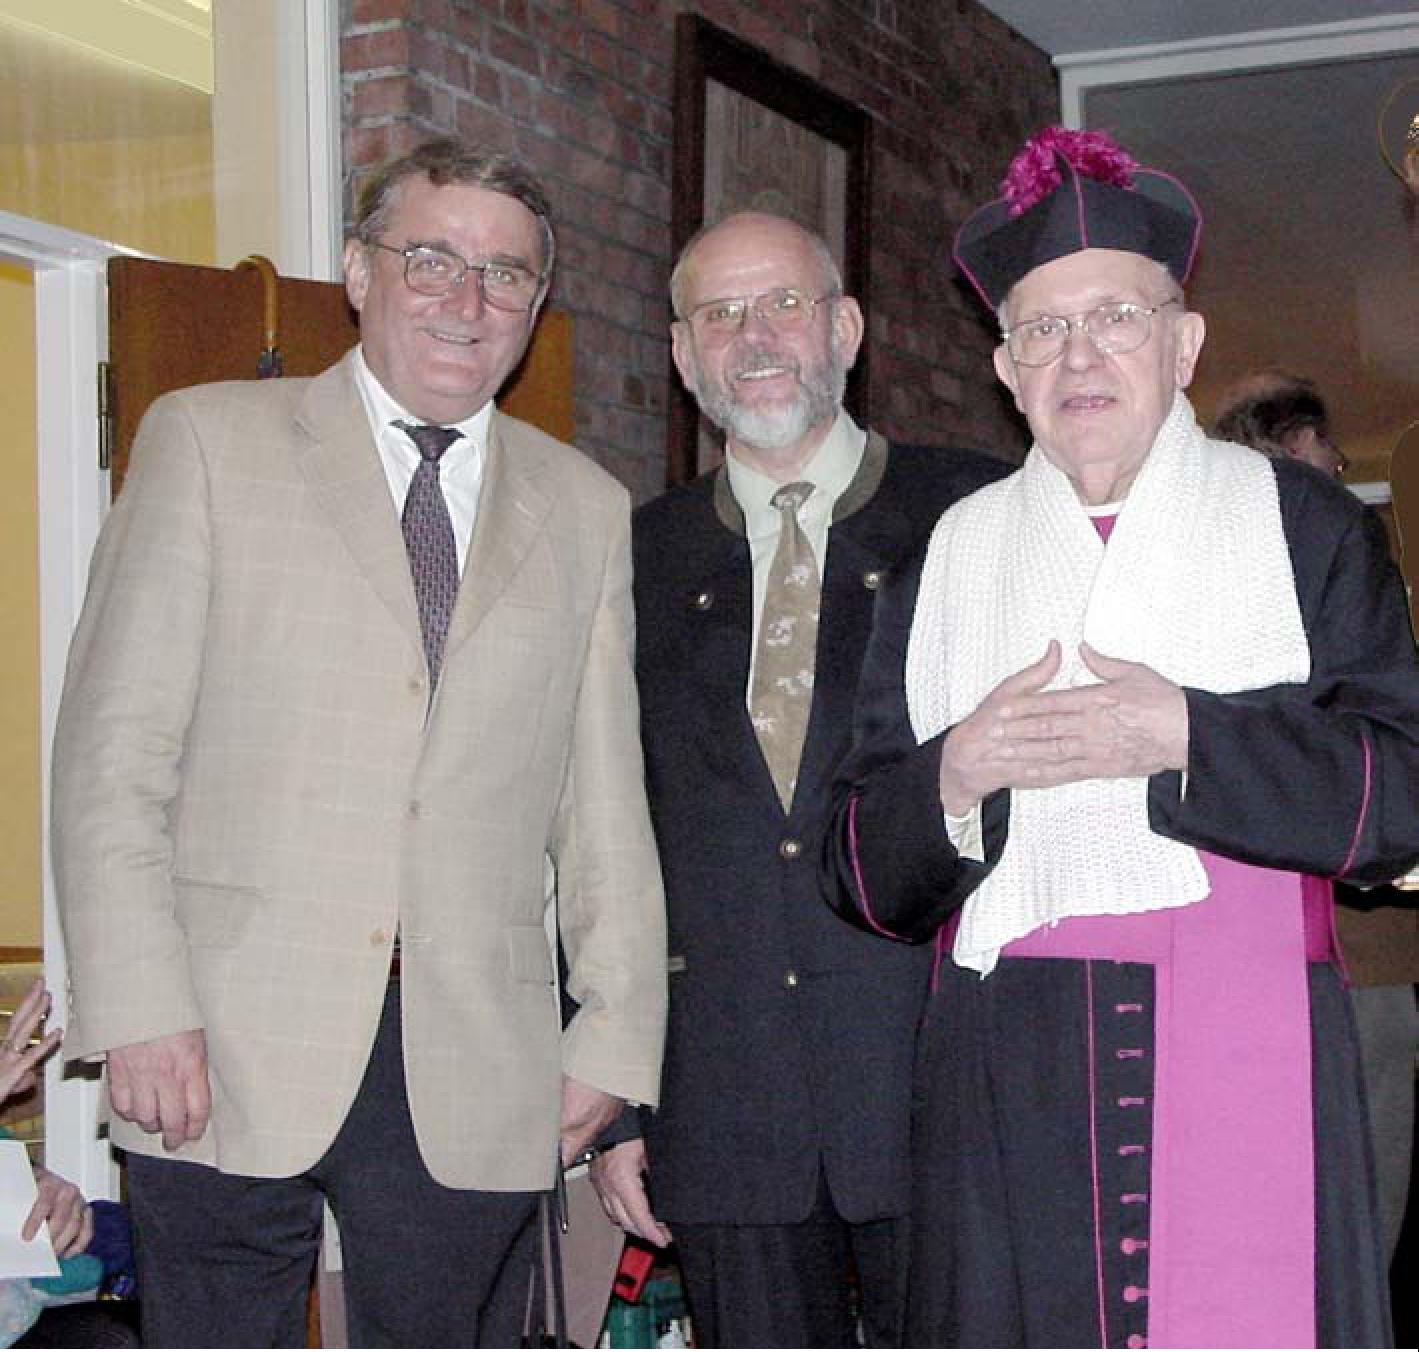 Festwoche 1999: Präses Werner Plenker (rechts) mit unserem damaligen Präfekten, Horst Kühnemund (Mitte), und Assistenten, Wilfried Becher (links)